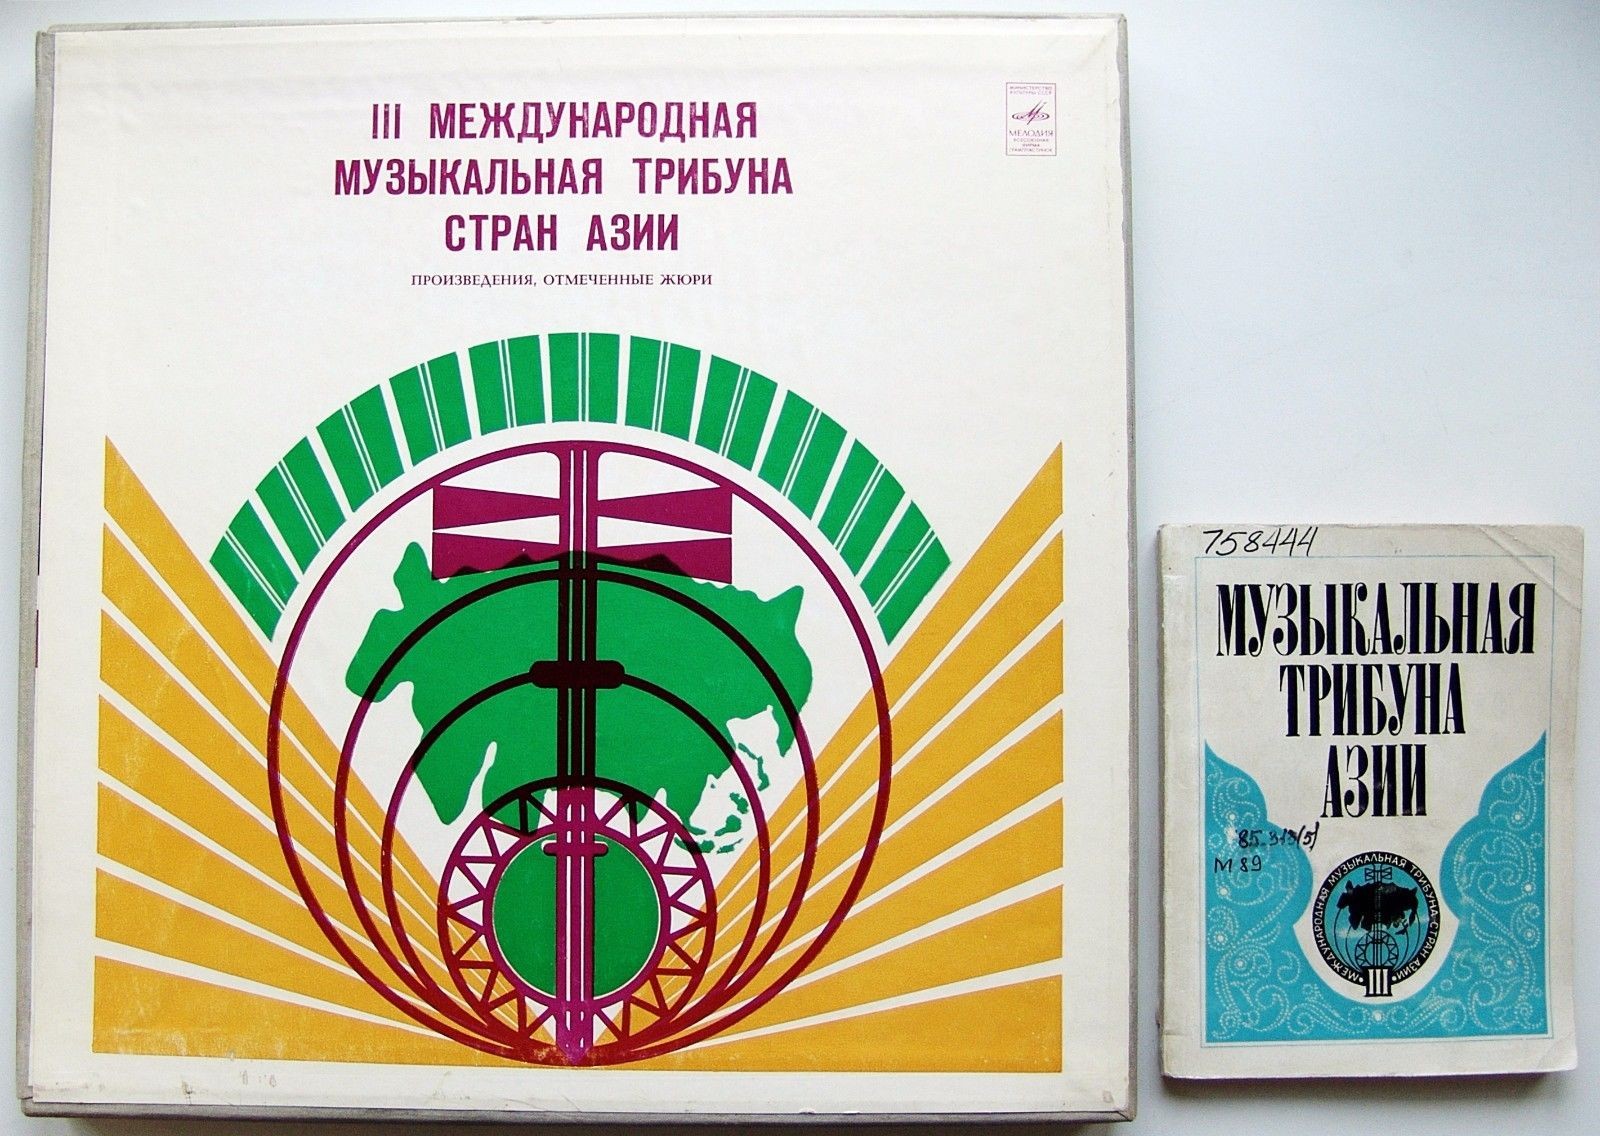 ТРЕТЬЯ МЕЖДУНАРОДНАЯ МУЗЫКАЛЬНАЯ ТРИБУНА СТРАН АЗИИ-1973. Произведения, отмеченные жюри